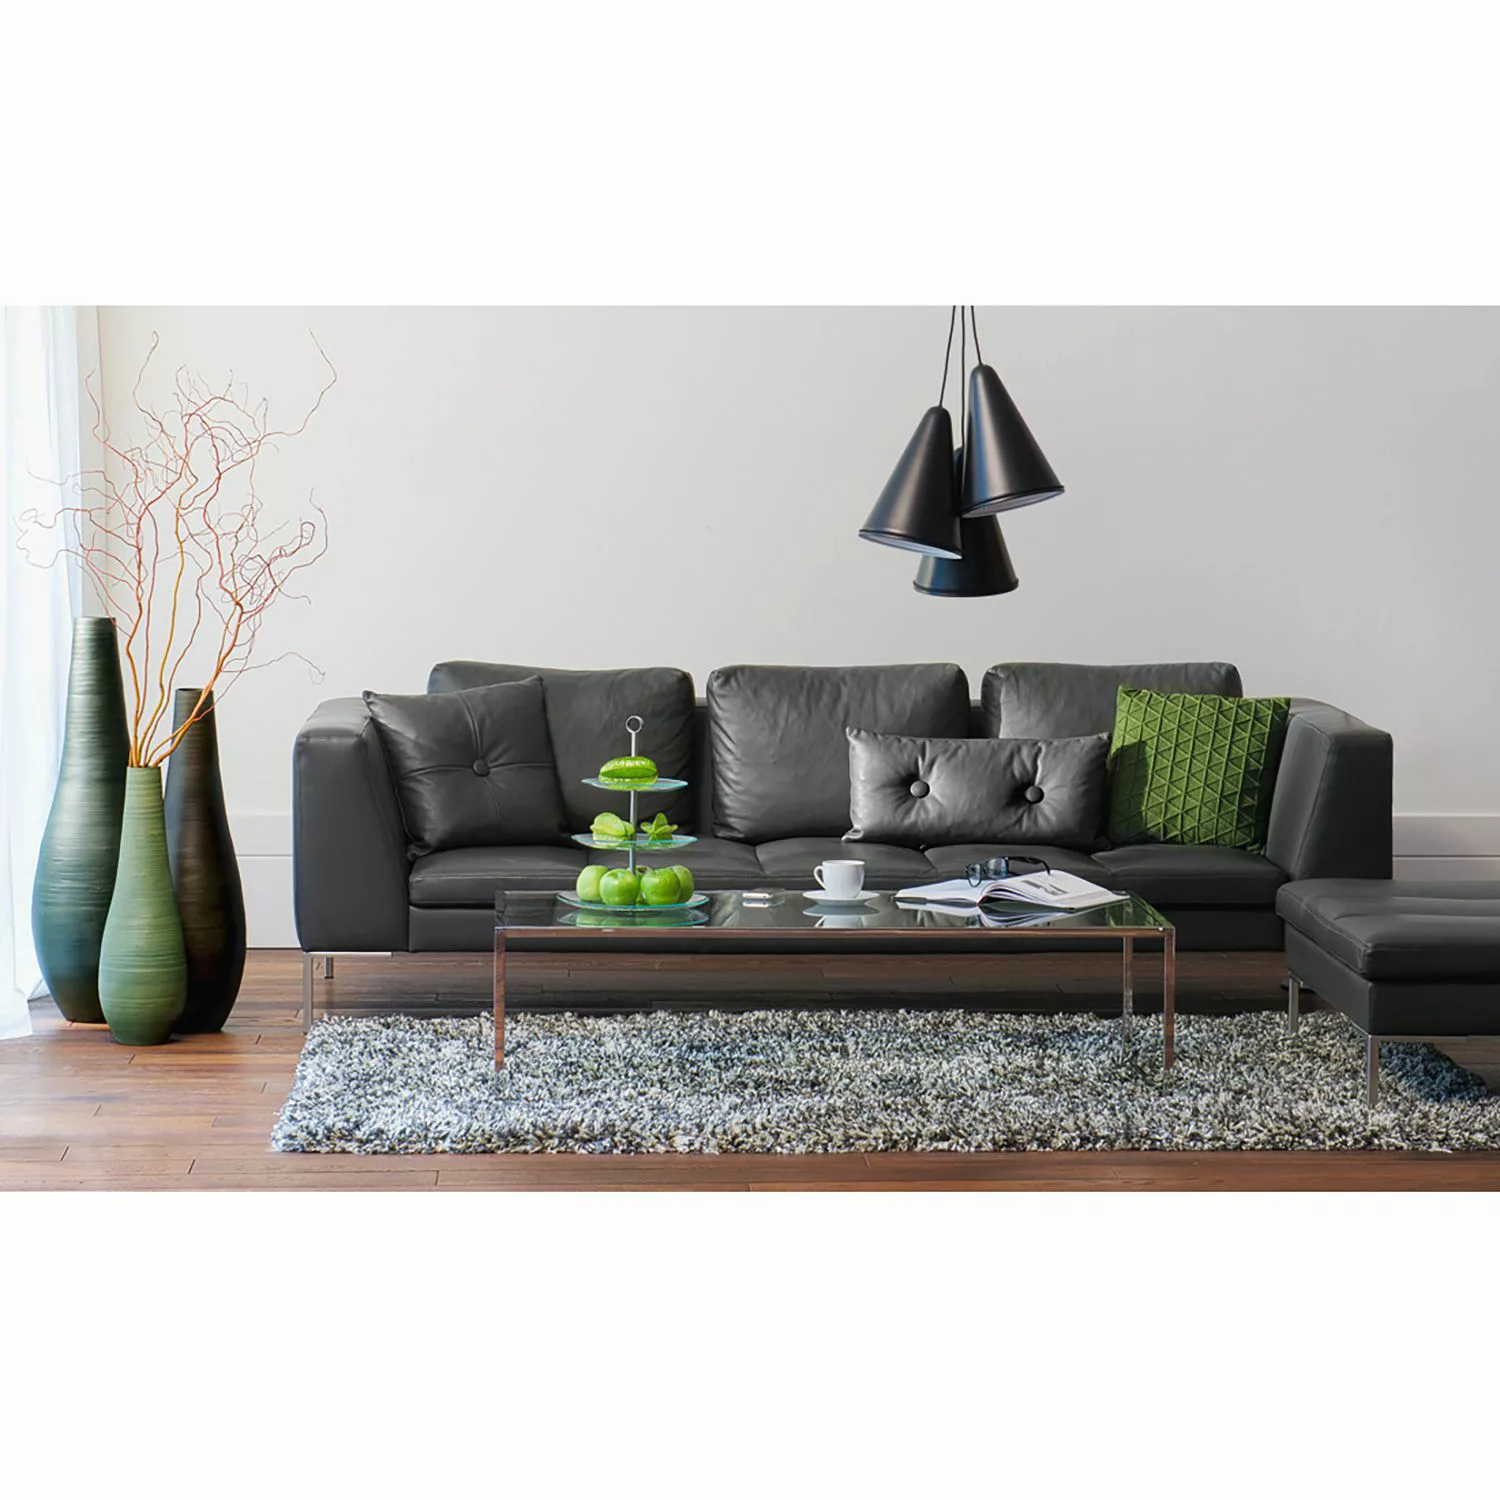 home24 Studio Copenhagen Sofa Madison 3-Sitzer Grün Webstoff 238x66x105 cm günstig online kaufen